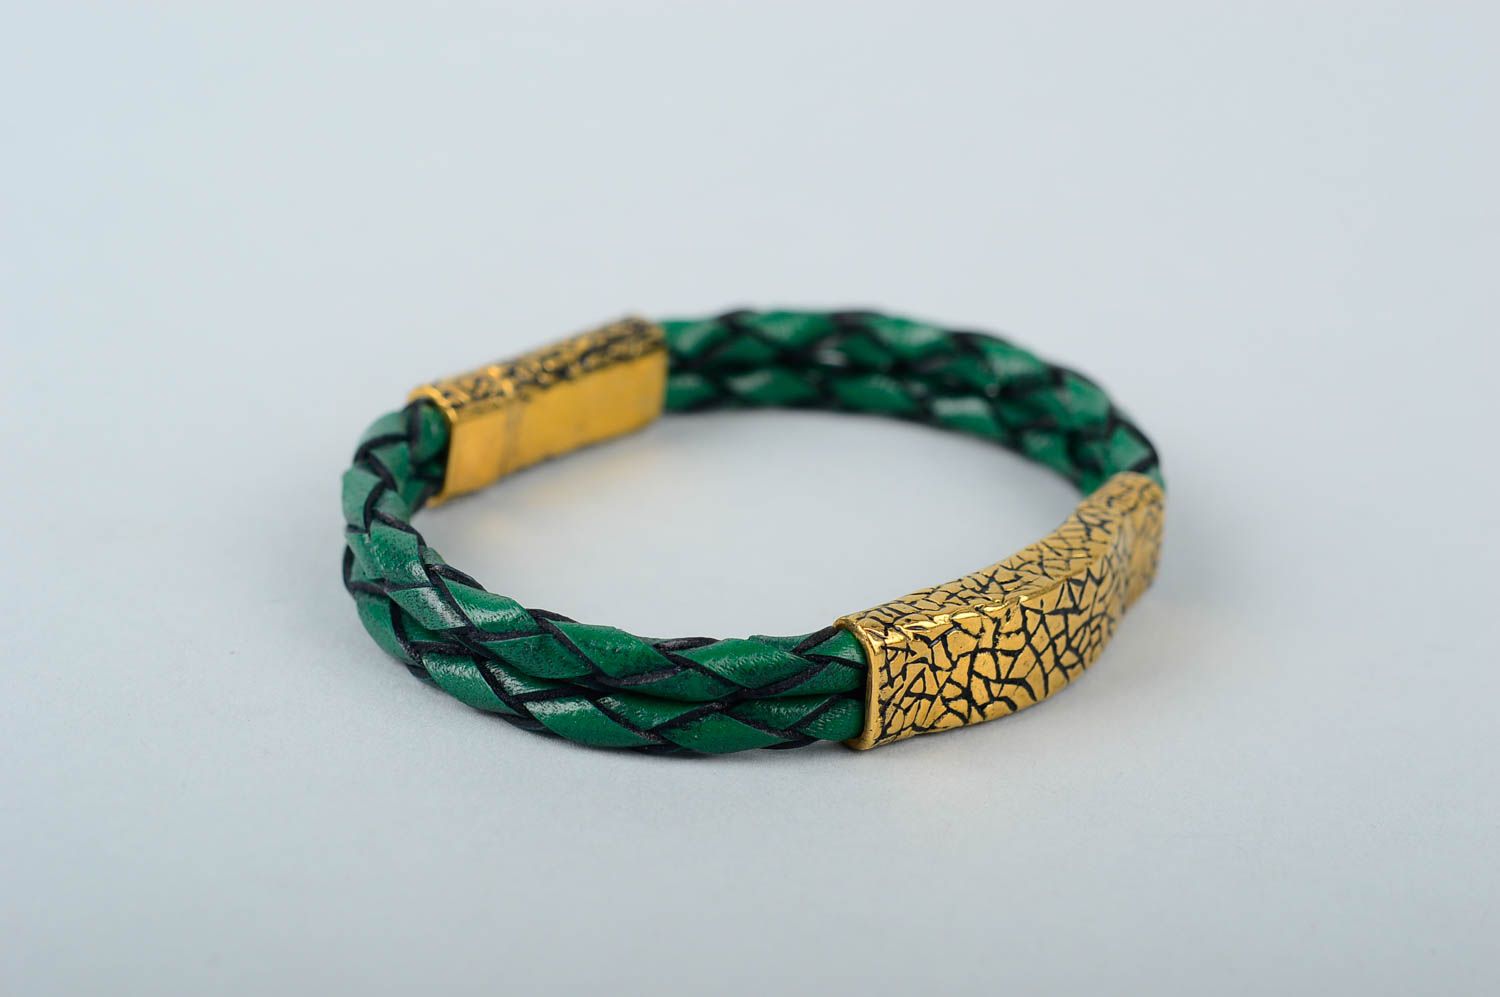 Кожаный браслет хэнд мэйд браслет на руку зеленый украшение из кожи и латуни фото 1